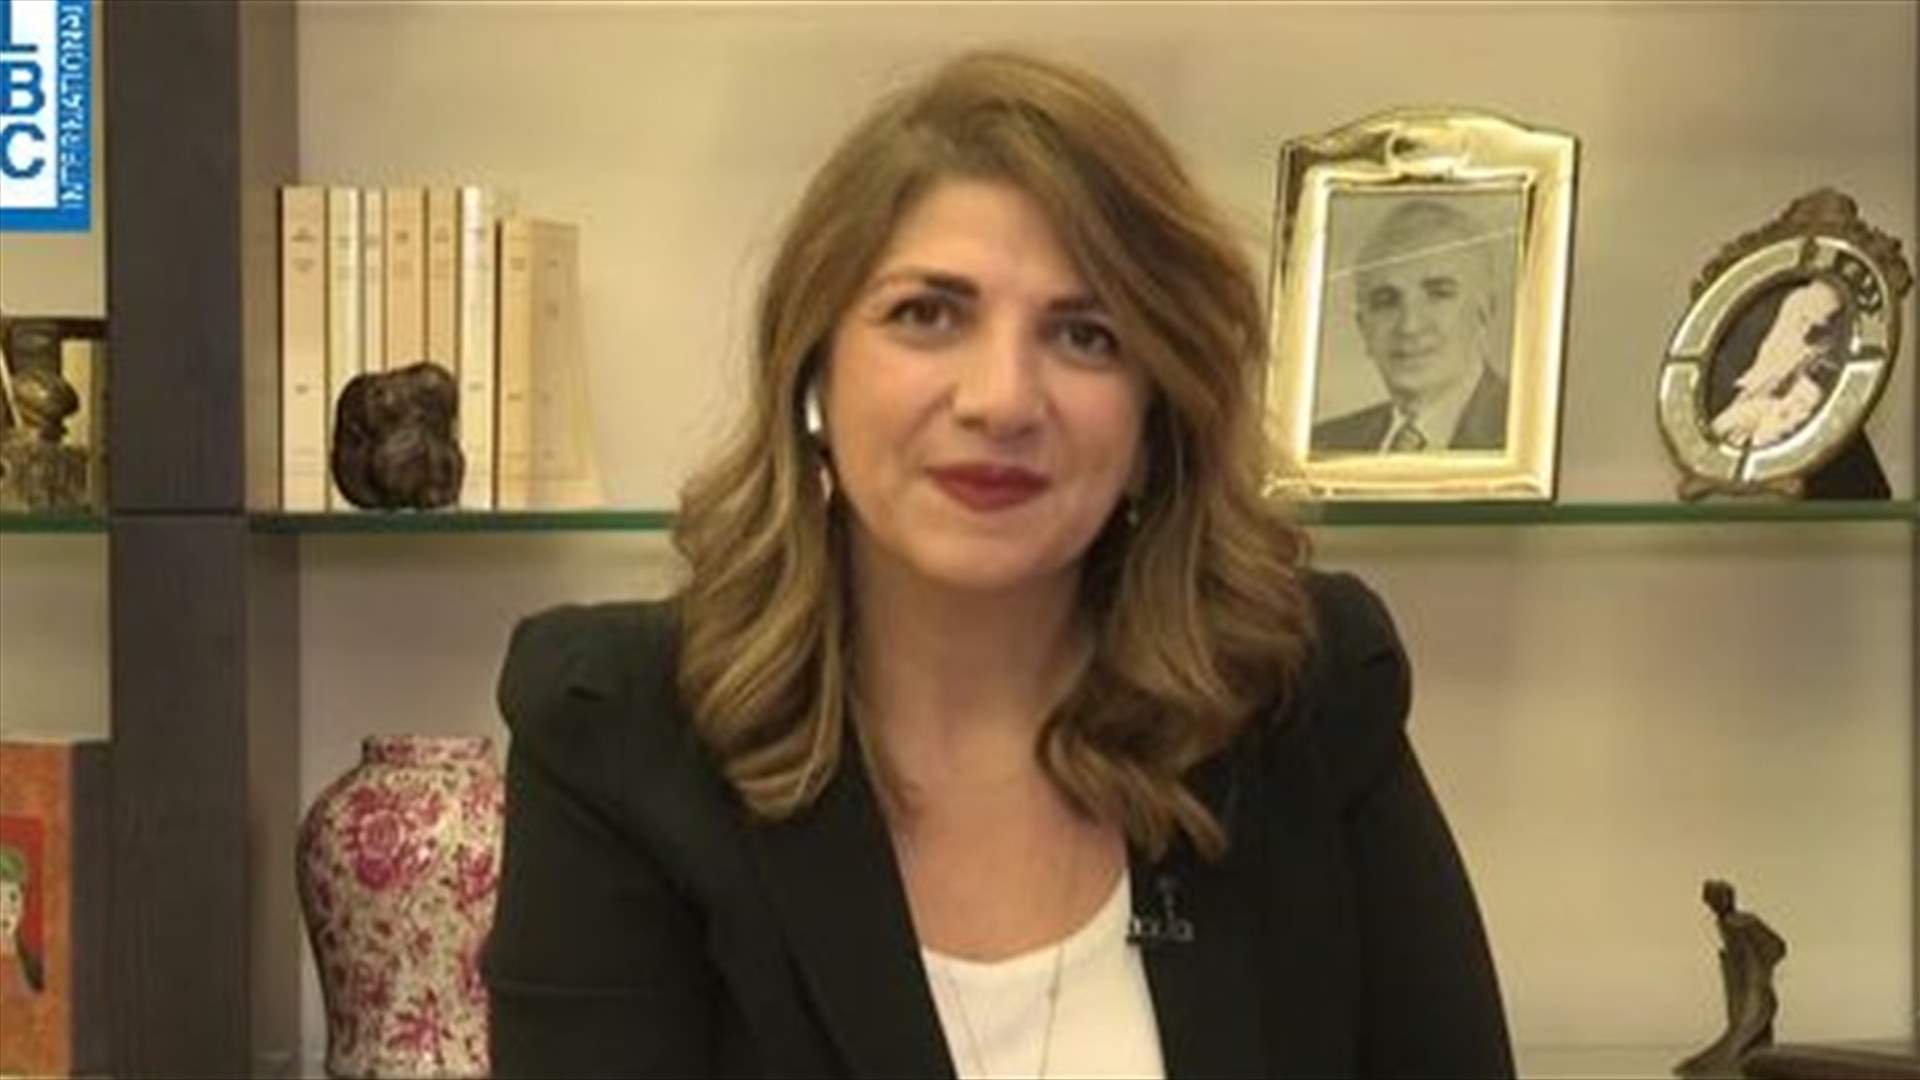 وزيرة العدل الجديدة ماري كلود نجم للـLBCI: أتمنى على الشعب اللبناني أن يمنحني الثقة وأنا متفائلة بالرغم من الصعوبات